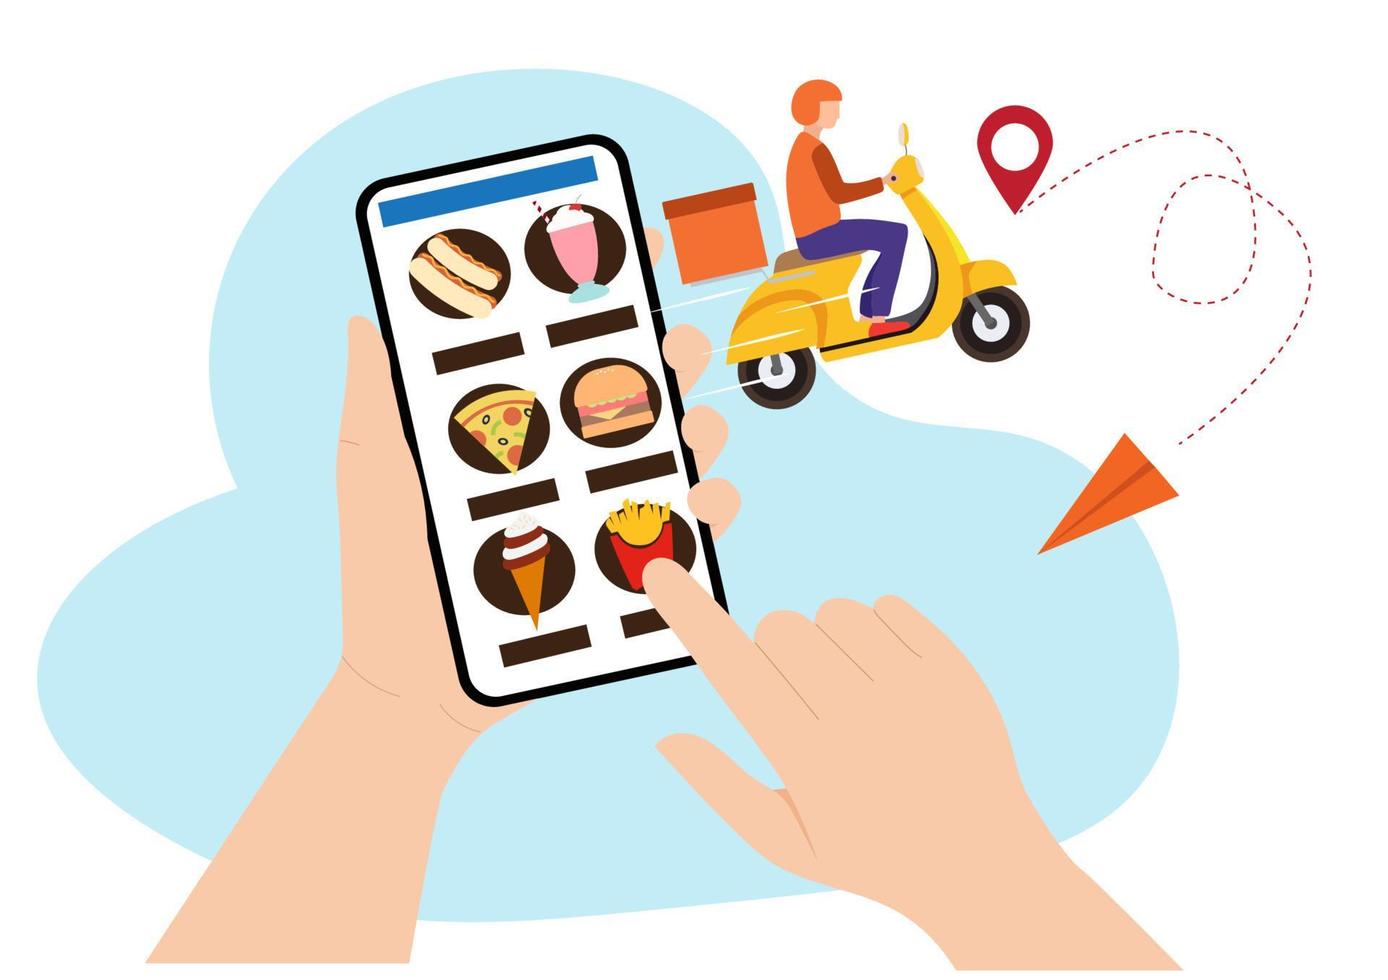 teléfono inteligente móvil con aplicación de entrega de alimentos pedir comida en línea. diseño gráfico de datos creativos modernos en el vector de ilustración de dibujos animados de estilo plano de aplicación